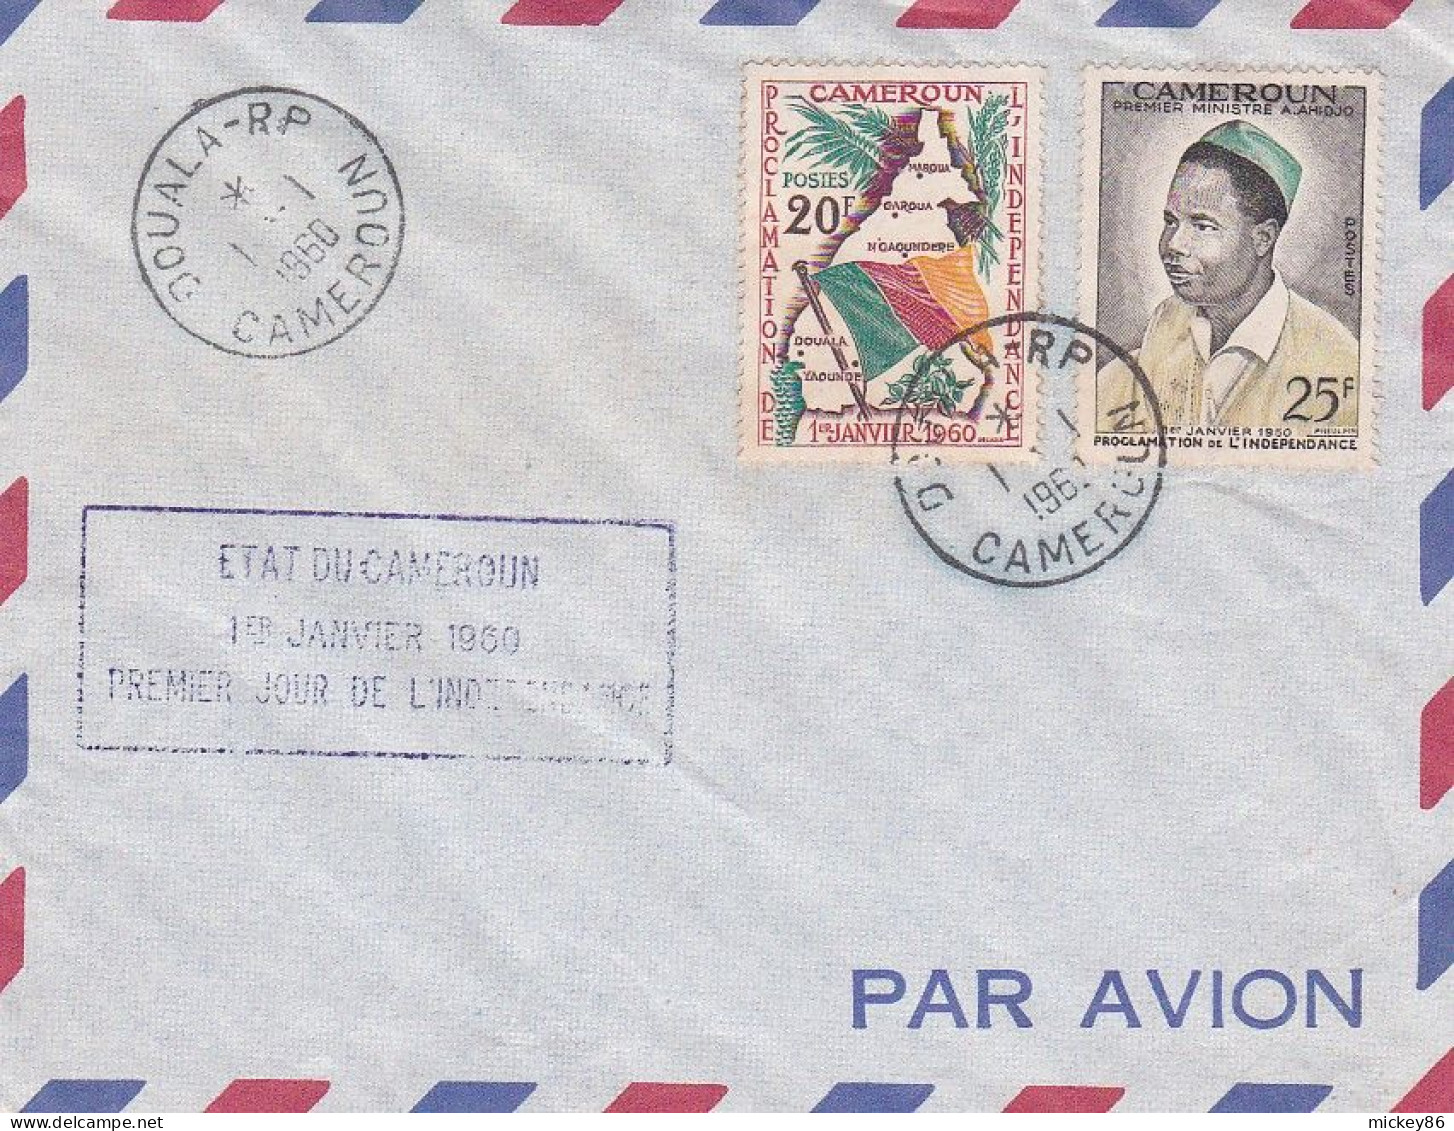 Cameroun --1960 - Lettre De DOUALA R.P -- Cachet Du 1-1-1960 --1er Jour De L'Indépendance -- Timbres--cachet - Camerun (1960-...)